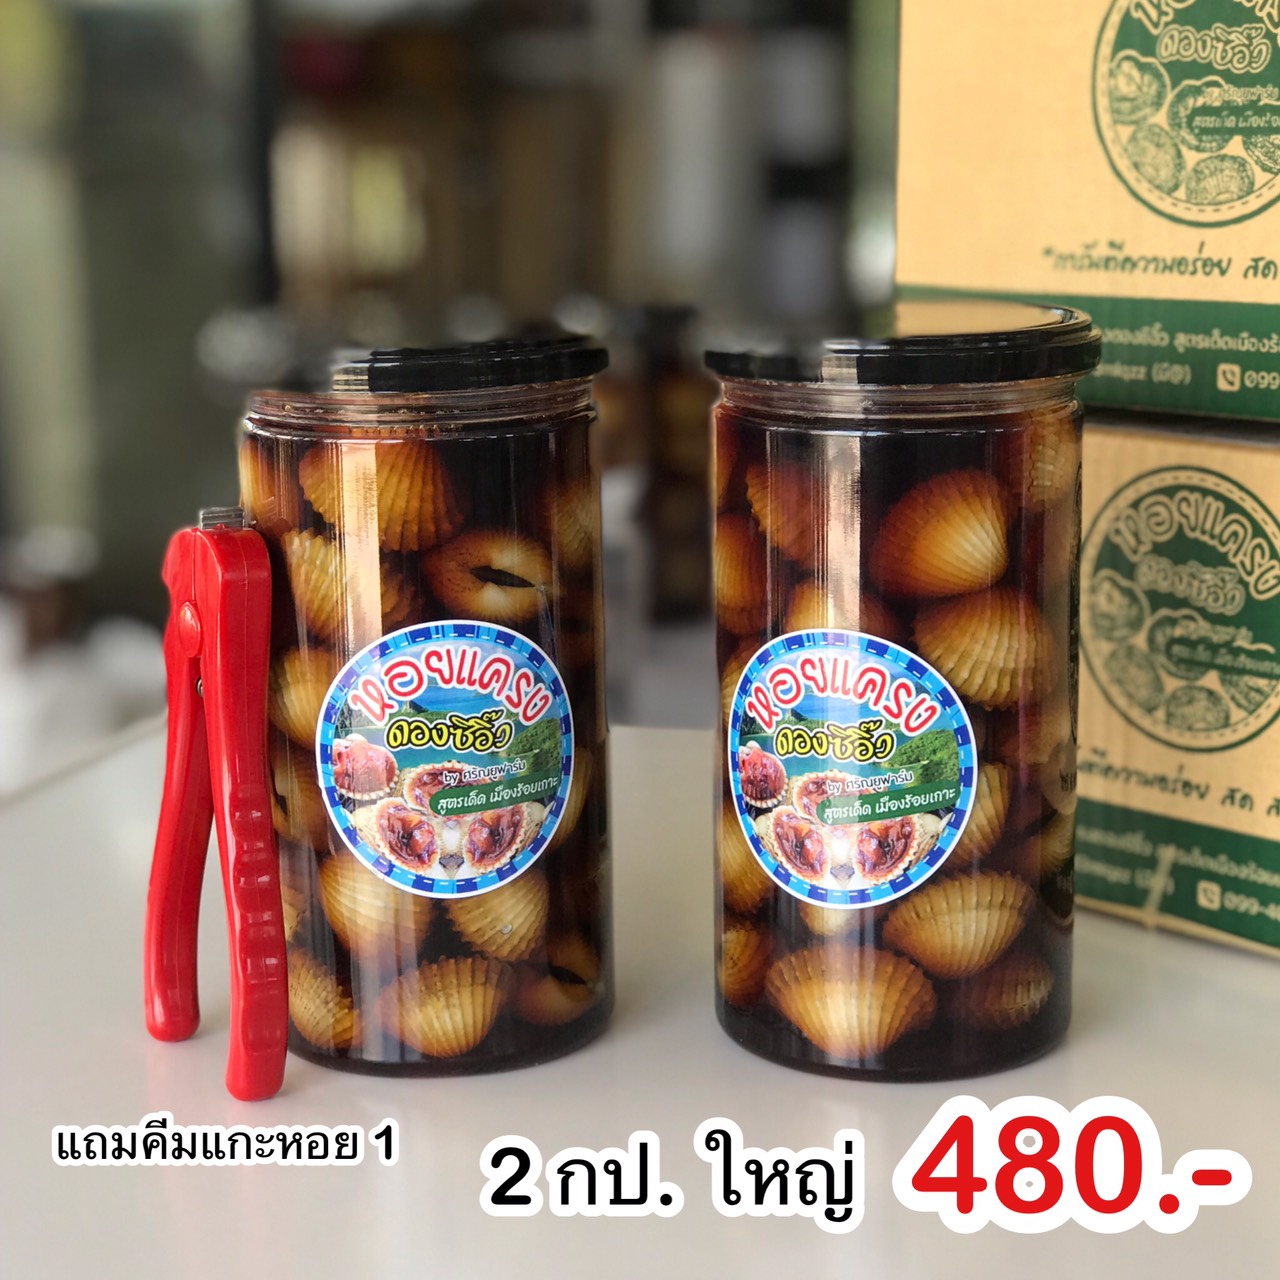 โปรซื้อ 3 กระปุกแถมคีมแกะหอยสแตนเลส หอยแครงดองซีอิ๊วสูตรเด็ดเมืองร้อยเกาะ ขนาด 720 ml.